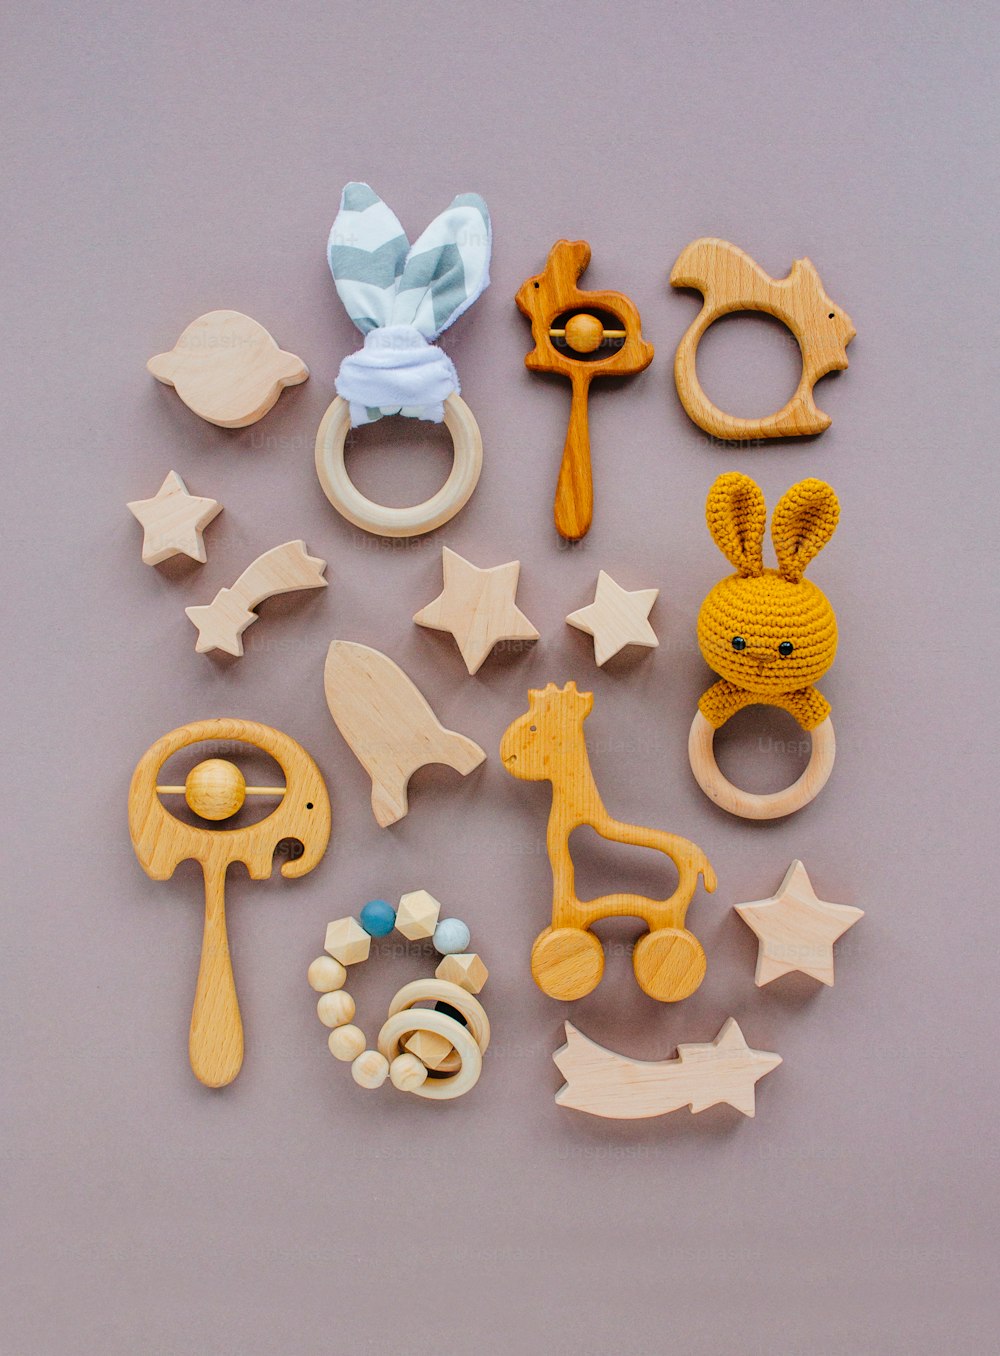 Concept de jouets non en plastique respectueux de l’environnement. Jouets et anneaux de dentition en bois sur fond gris avec espace vide pour le texte.